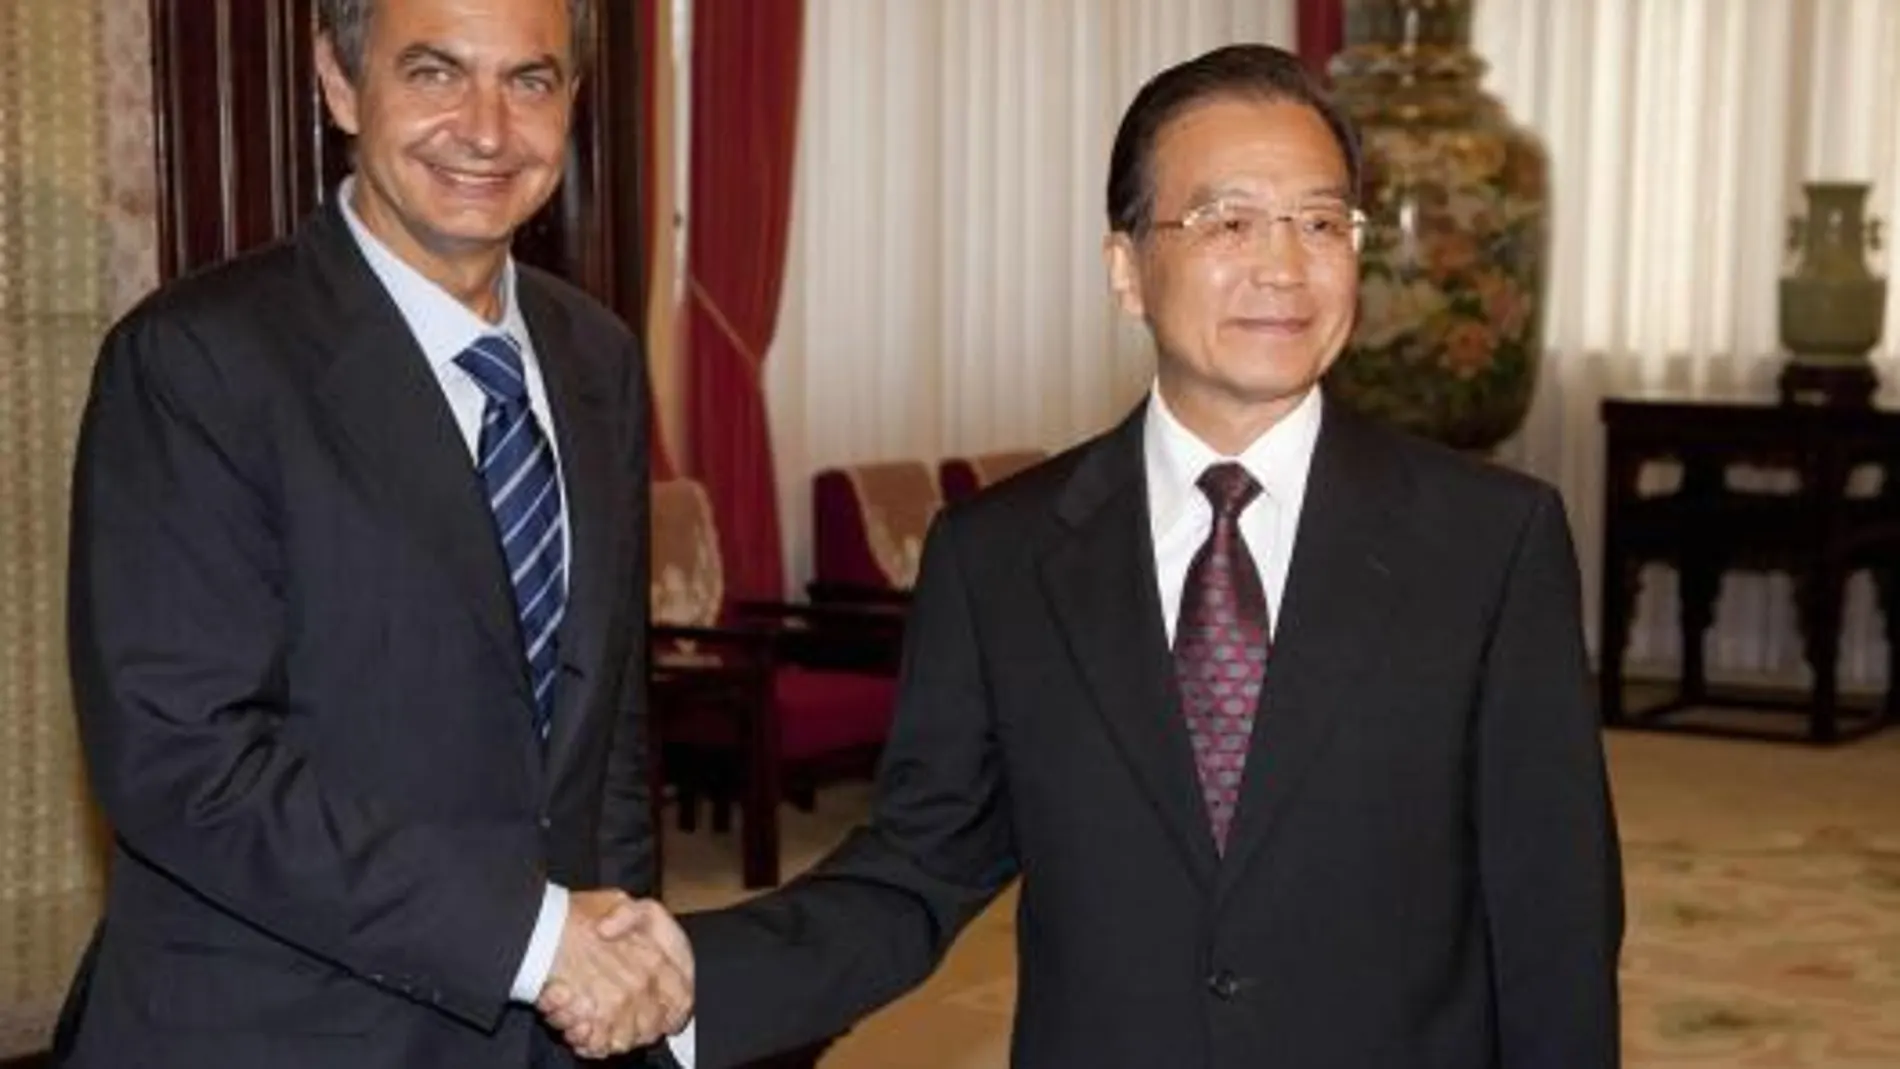 El primer ministro chino, Wen Jiabao, en una imagen de archivo junto a Zapatero